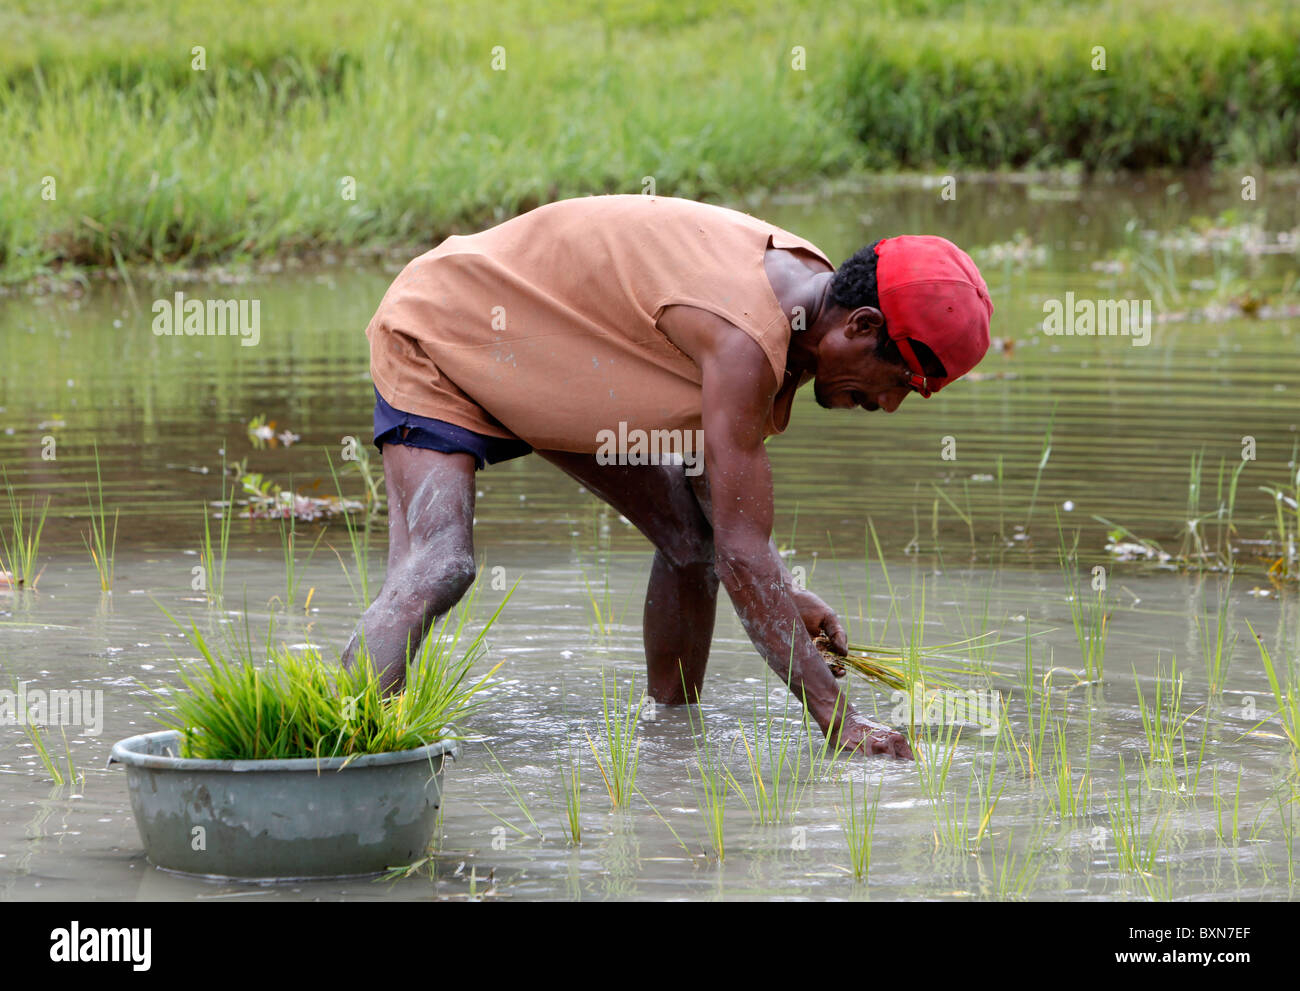 La plantation d'agriculteurs riz dans une rizière au Timor-Leste (Timor oriental) Banque D'Images